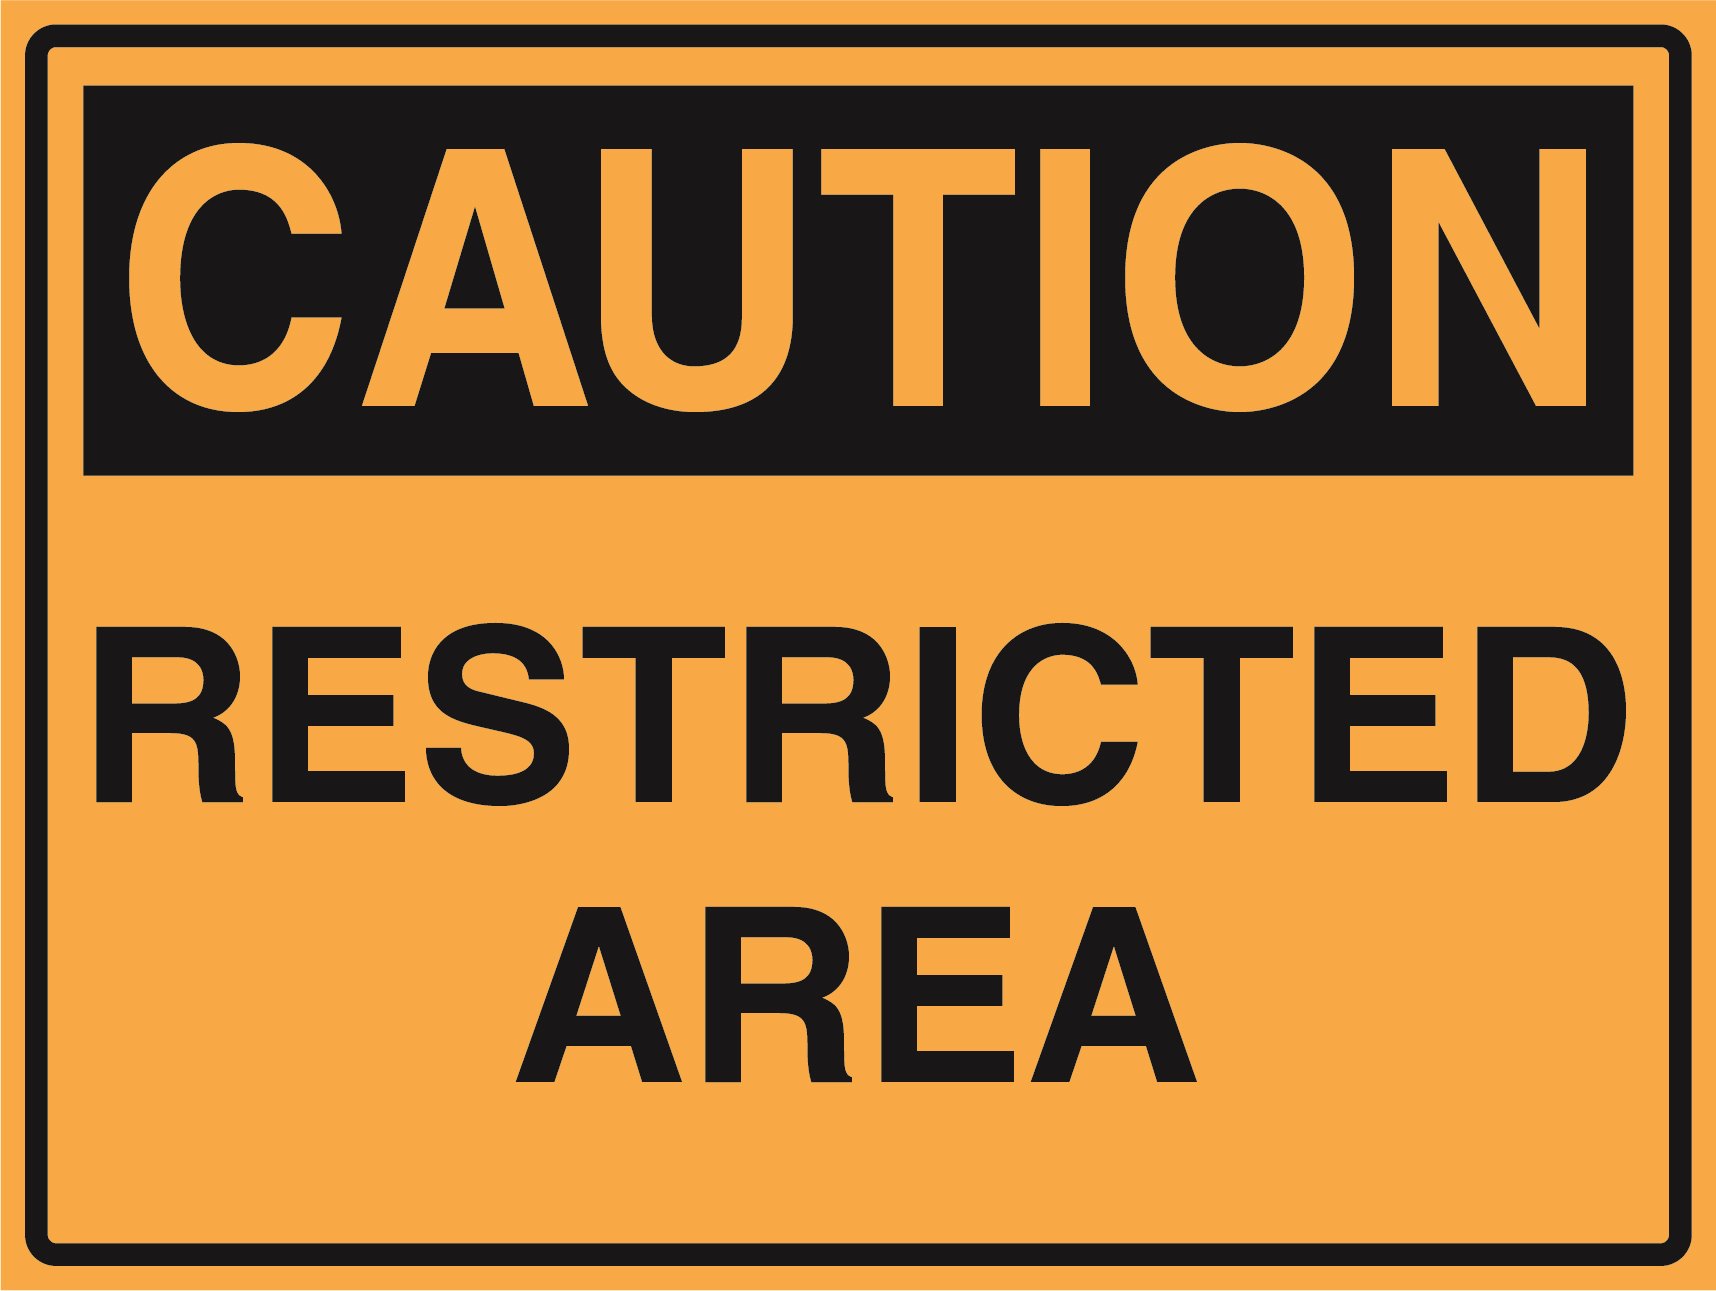 Caution - Restriction Area